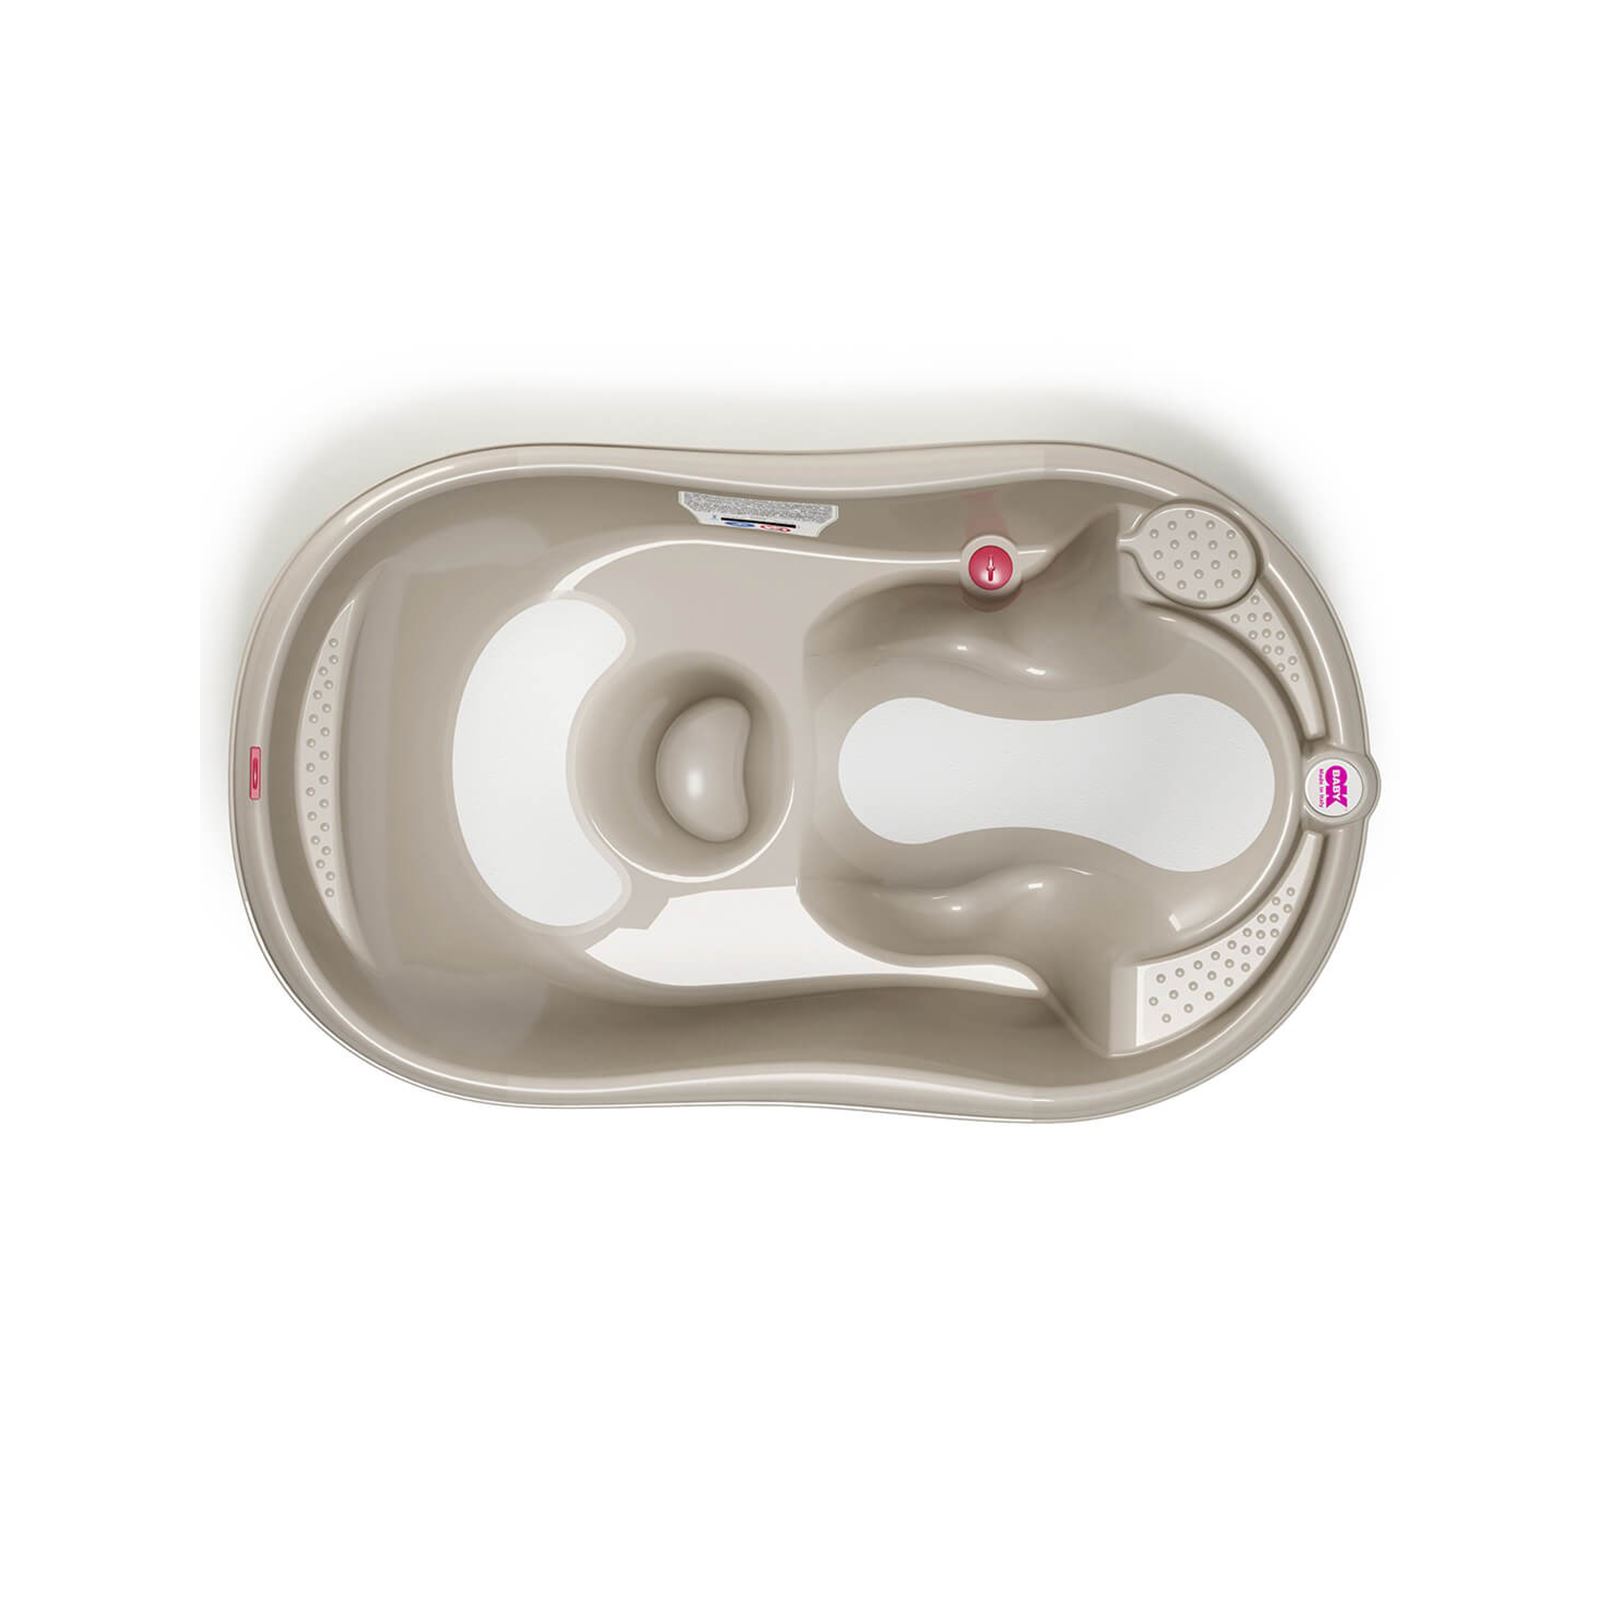 OkBaby Onda Evol Banyo Küveti & Banyo Küvet Taşıyıcı / Gri